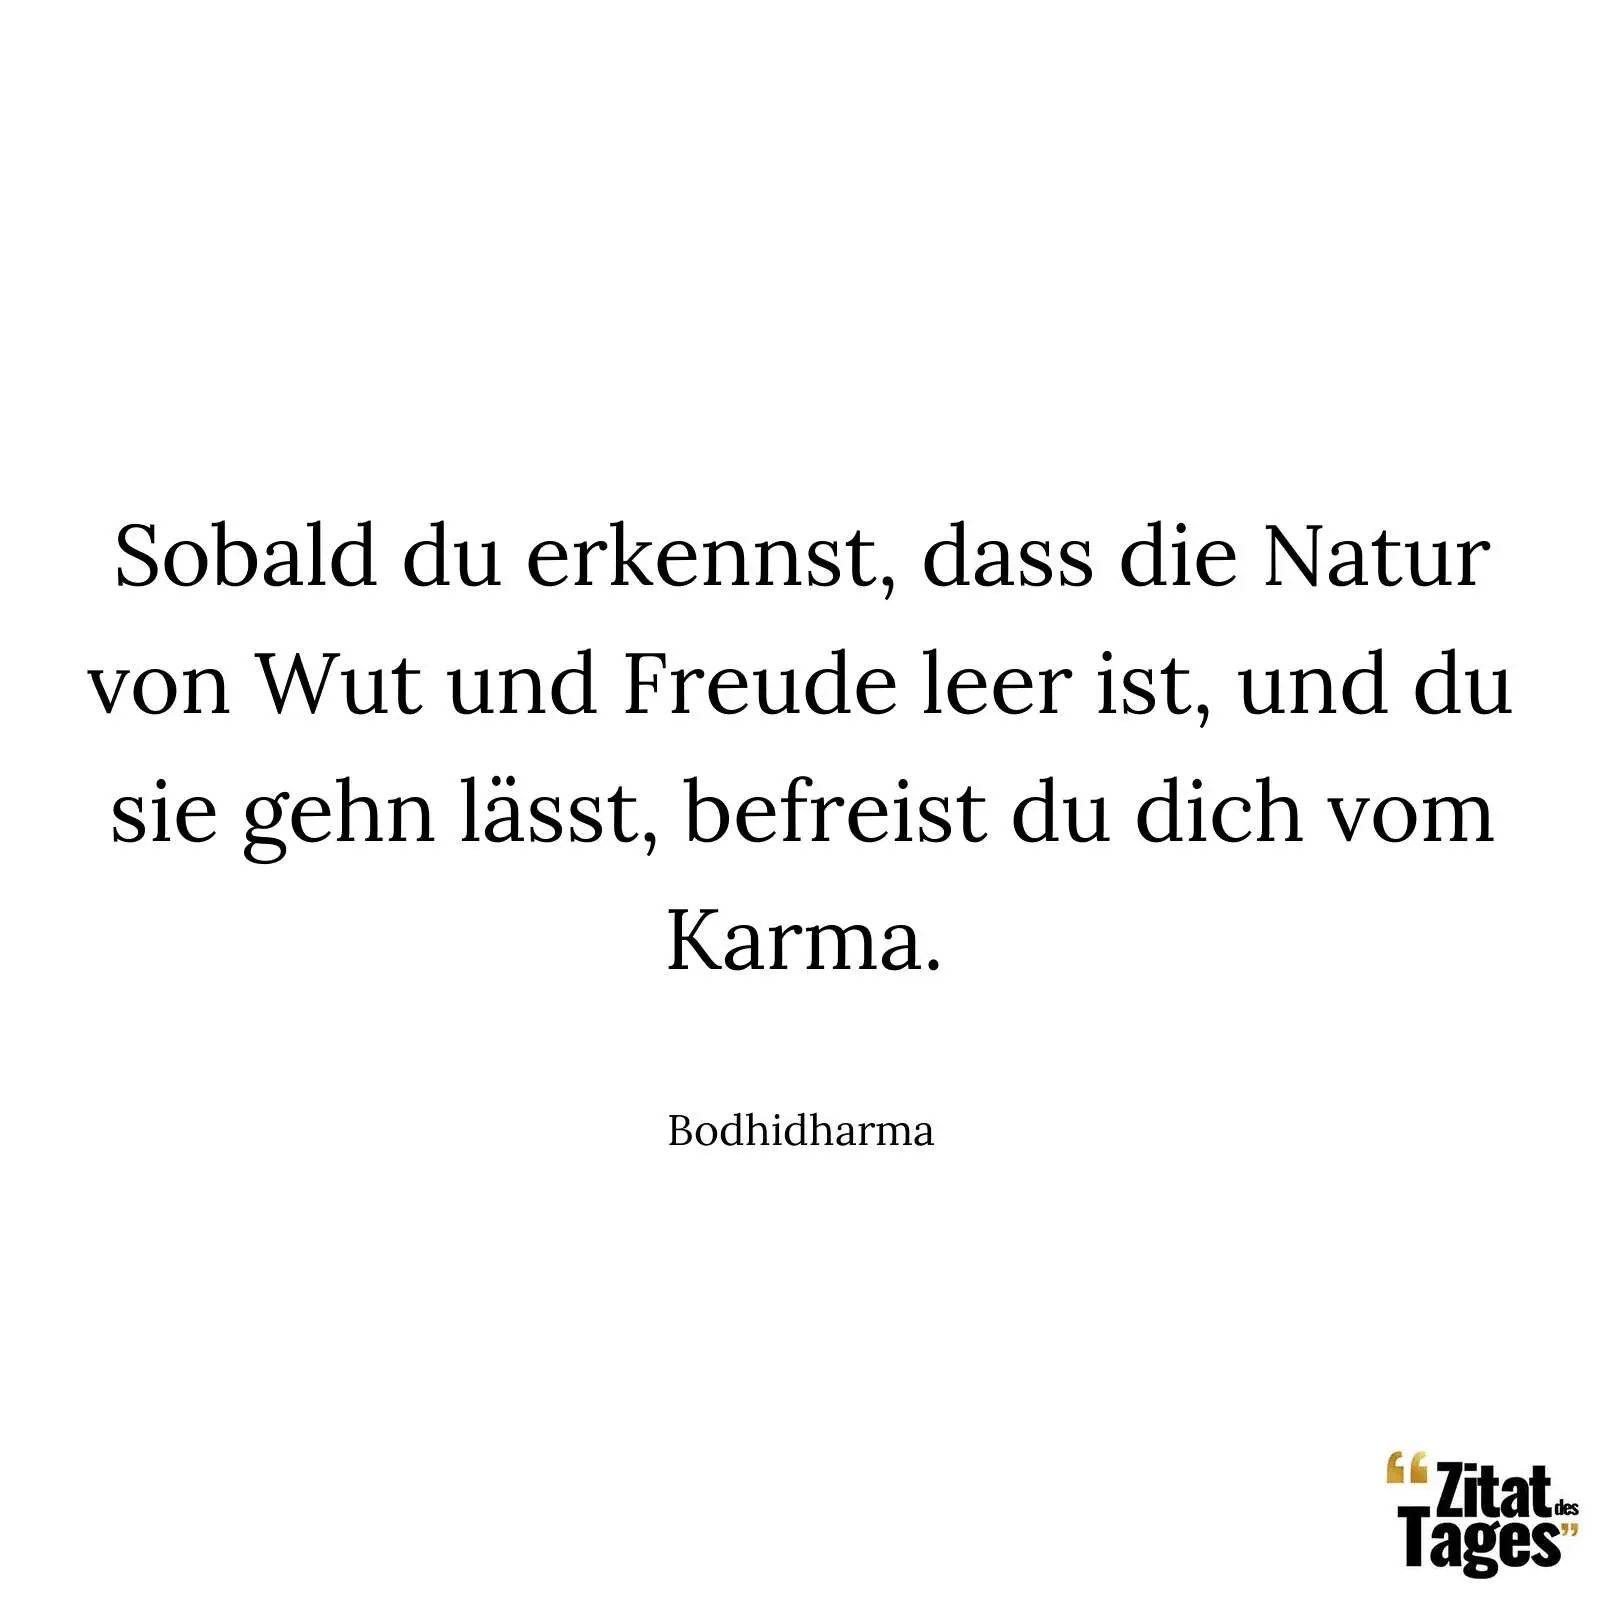 Sobald du erkennst, dass die Natur von Wut und Freude leer ist, und du sie gehn lässt, befreist du dich vom Karma. - Bodhidharma